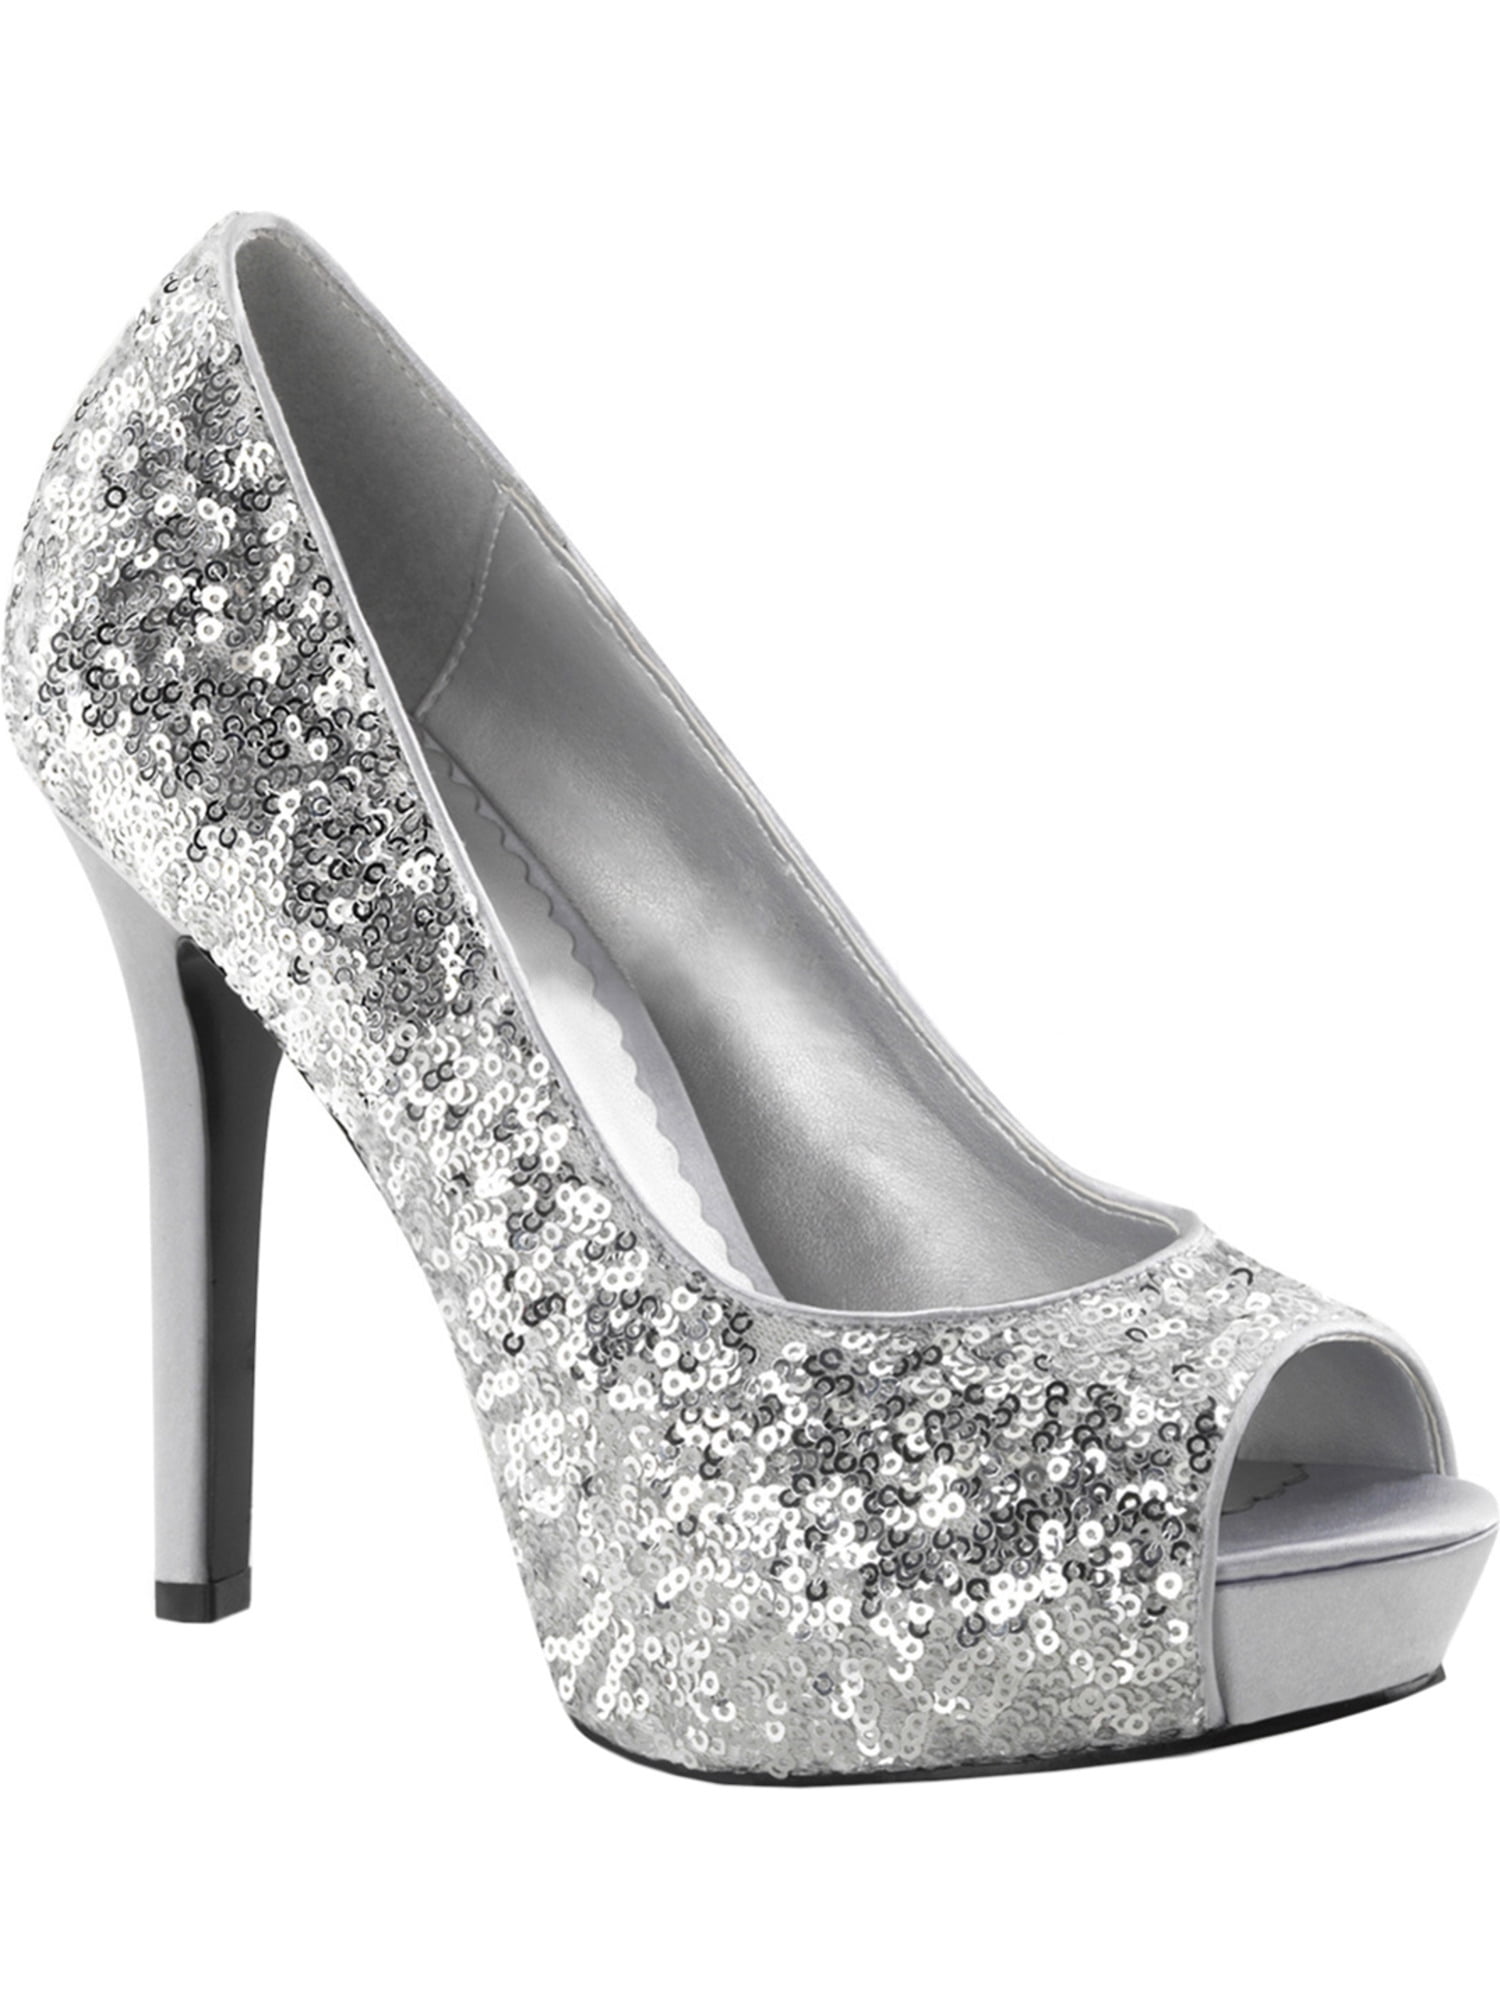 womens 4.75 inch silver sequin heels 